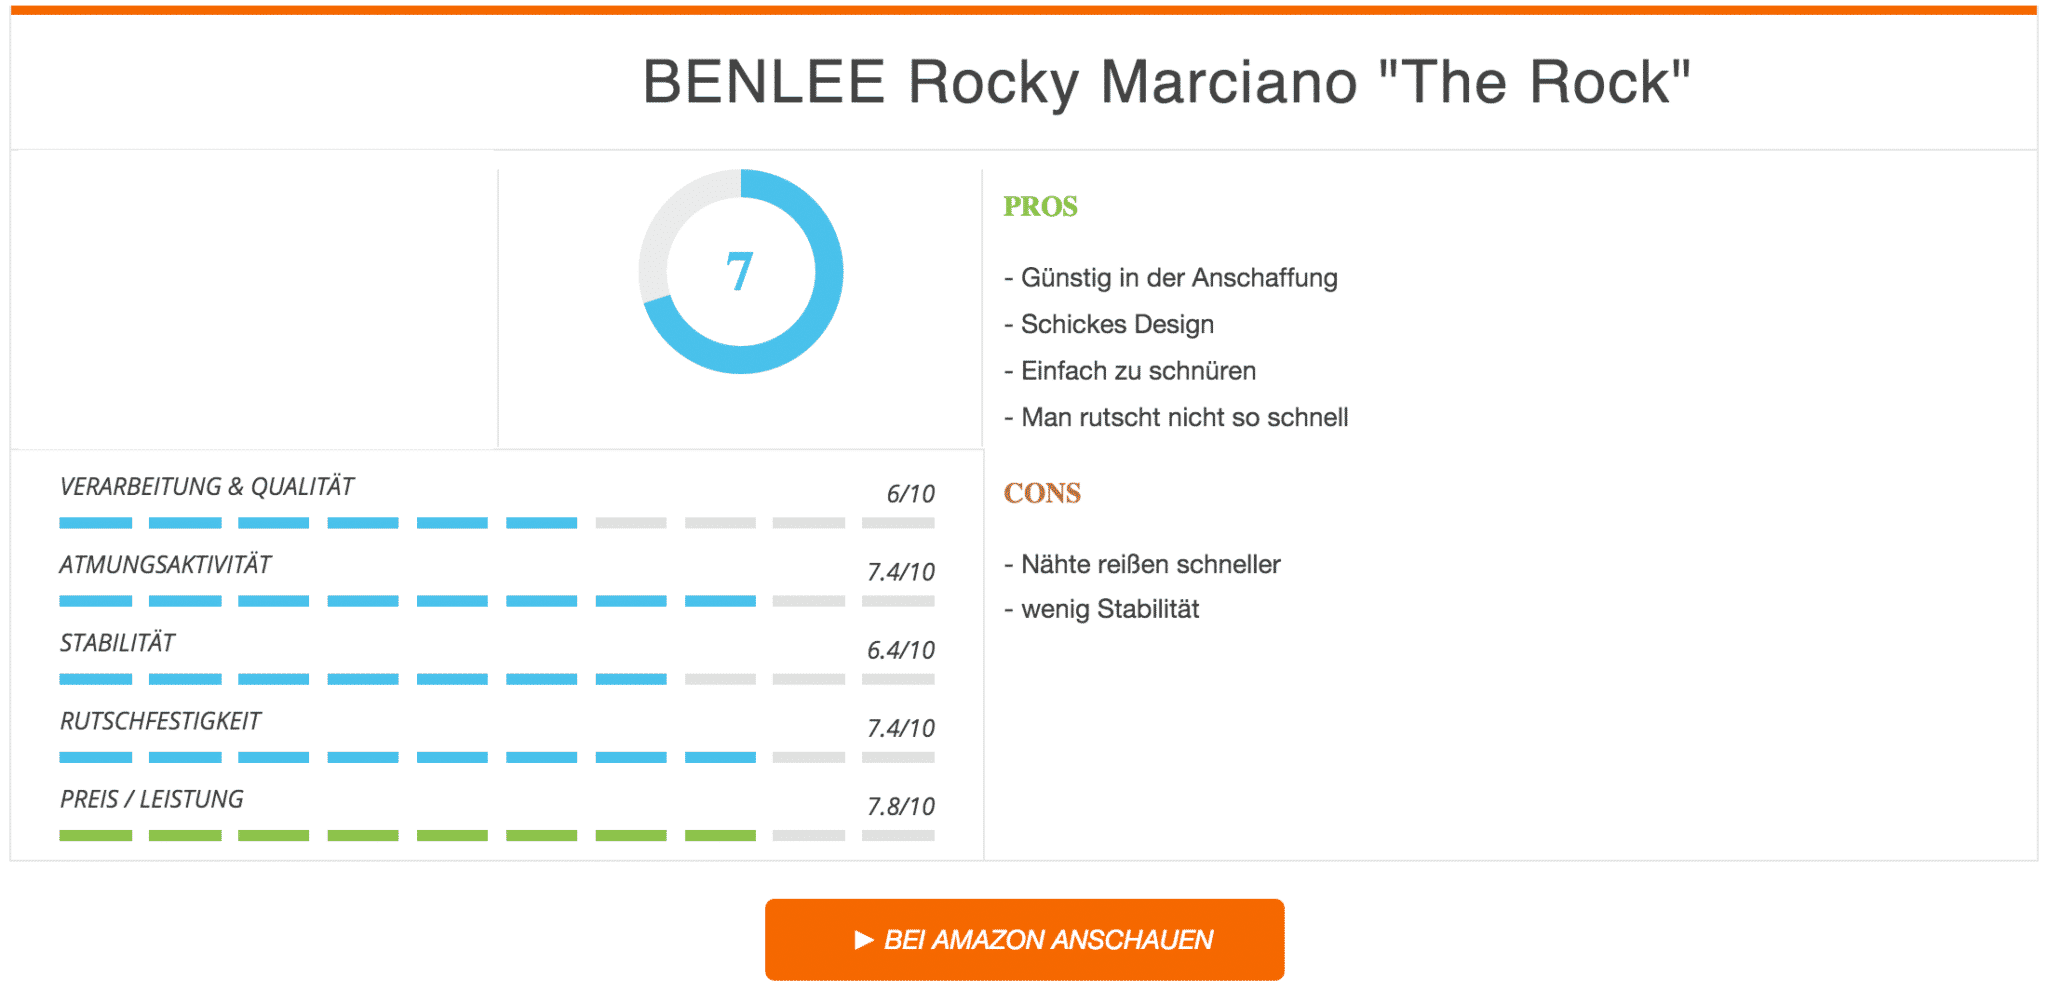 BENLEE Rocky Marciano Herren Boxing Boots The Rock Ergebnis